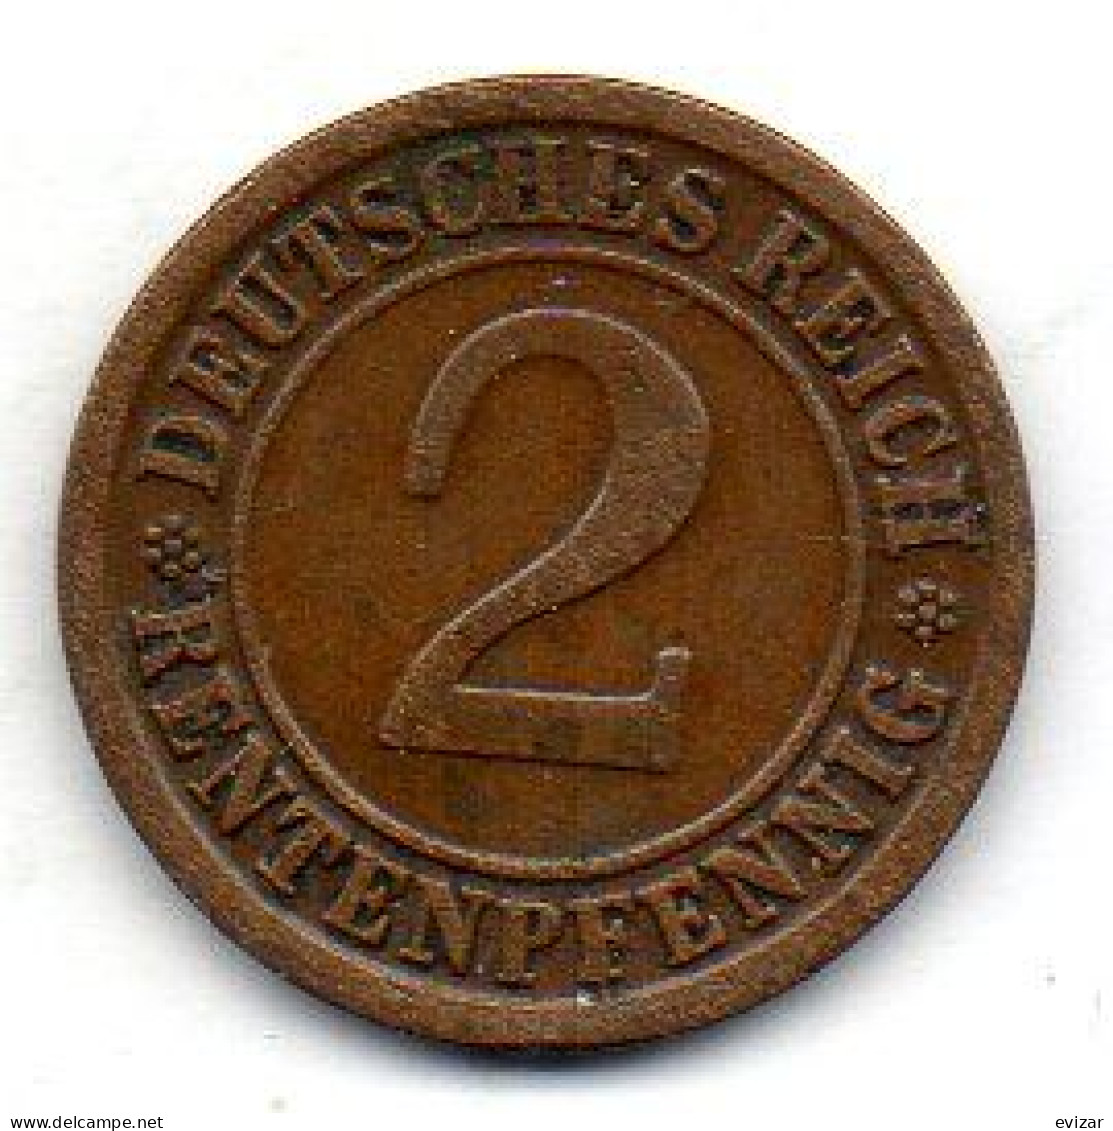 GERMANY - WEIMAR REPUBLIC, 2 Renten Pfennig, Bronze, Year 1923-A, KM # 31 - 2 Renten- & 2 Reichspfennig